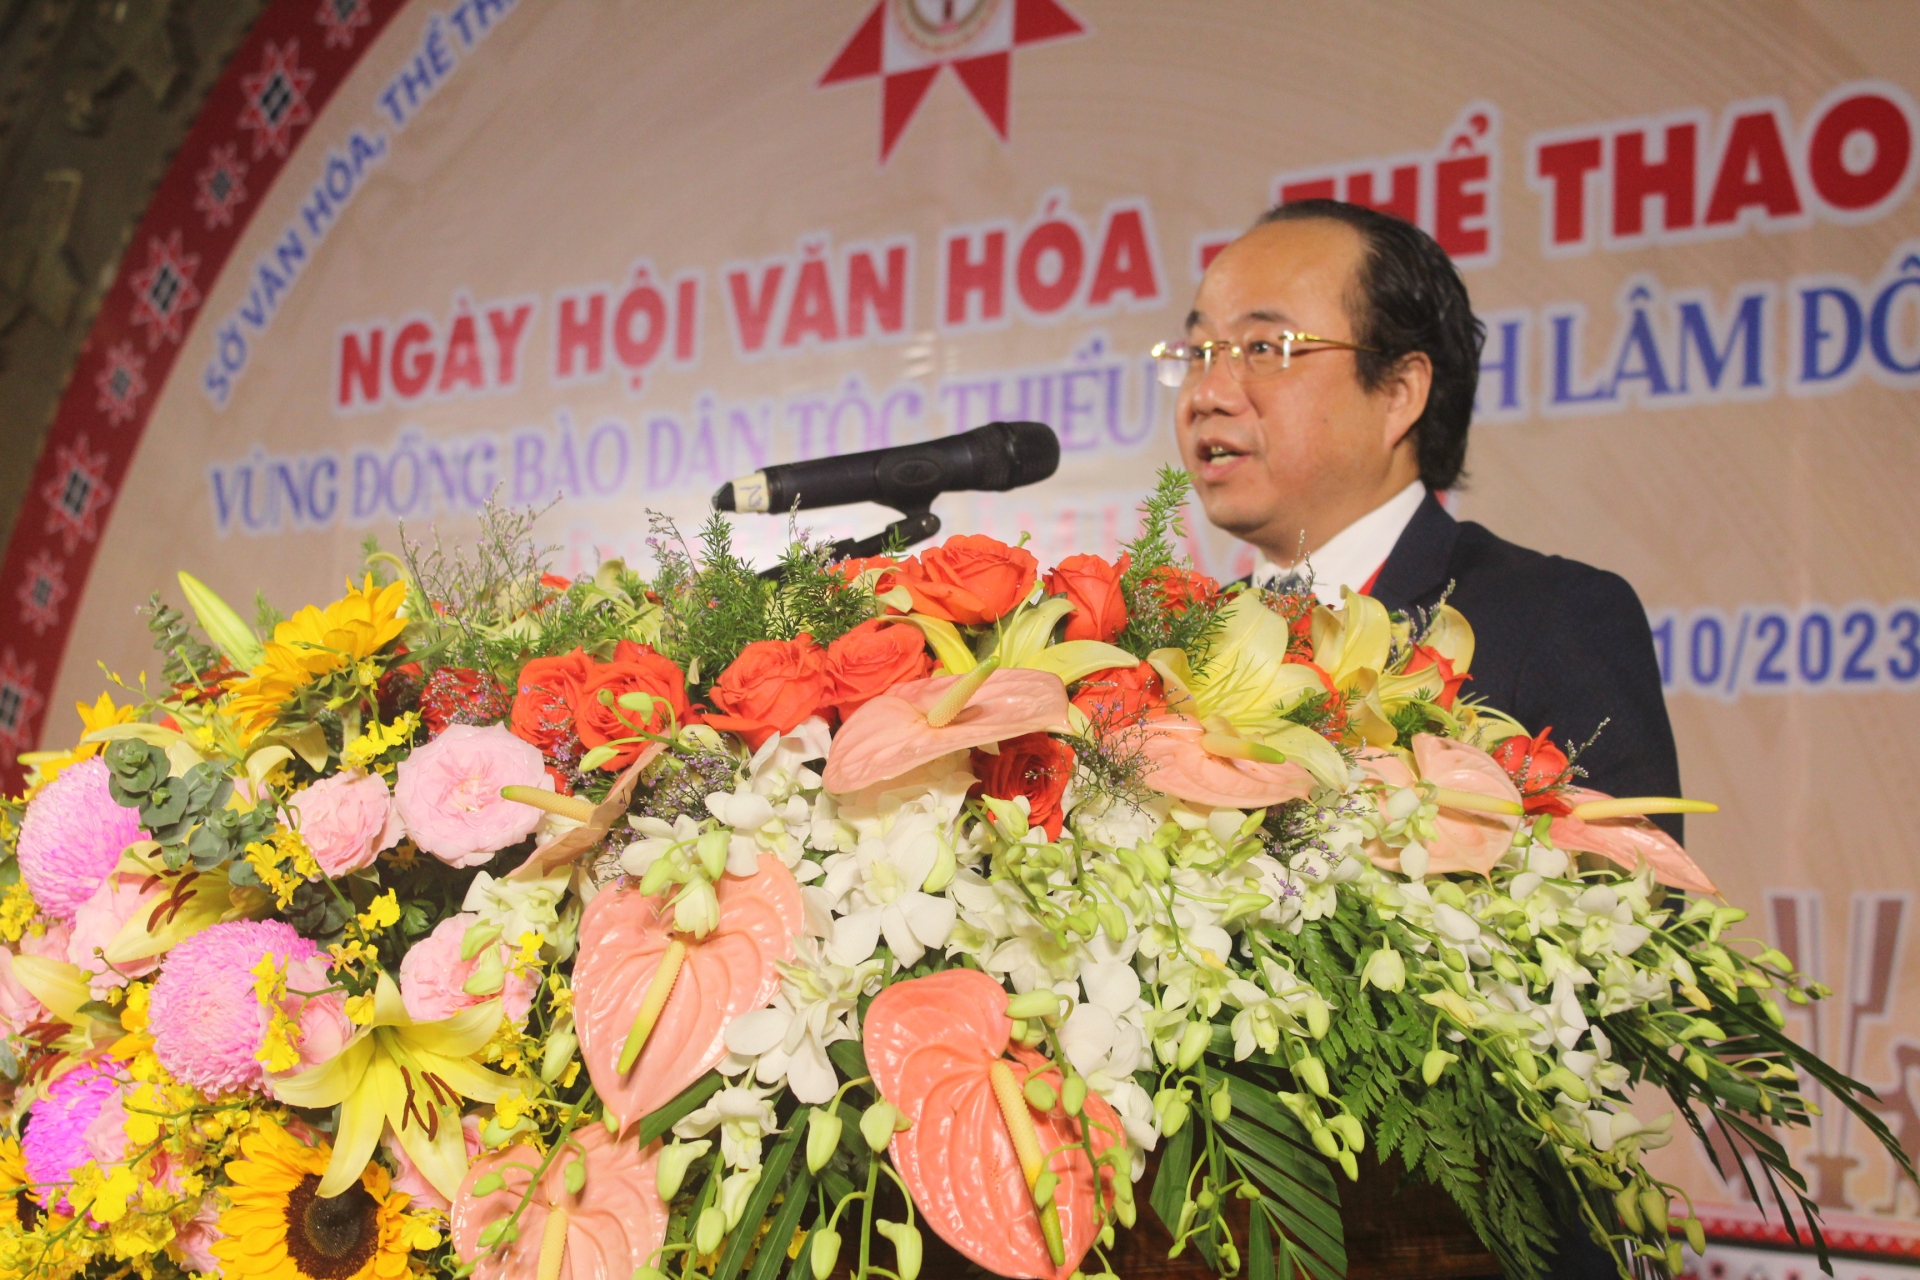 Ông Trần Thanh Hoài - Phó Giám đốc Sở Văn hóa - Thể thao và Du lịch phát biểu khai mạc Ngày hội